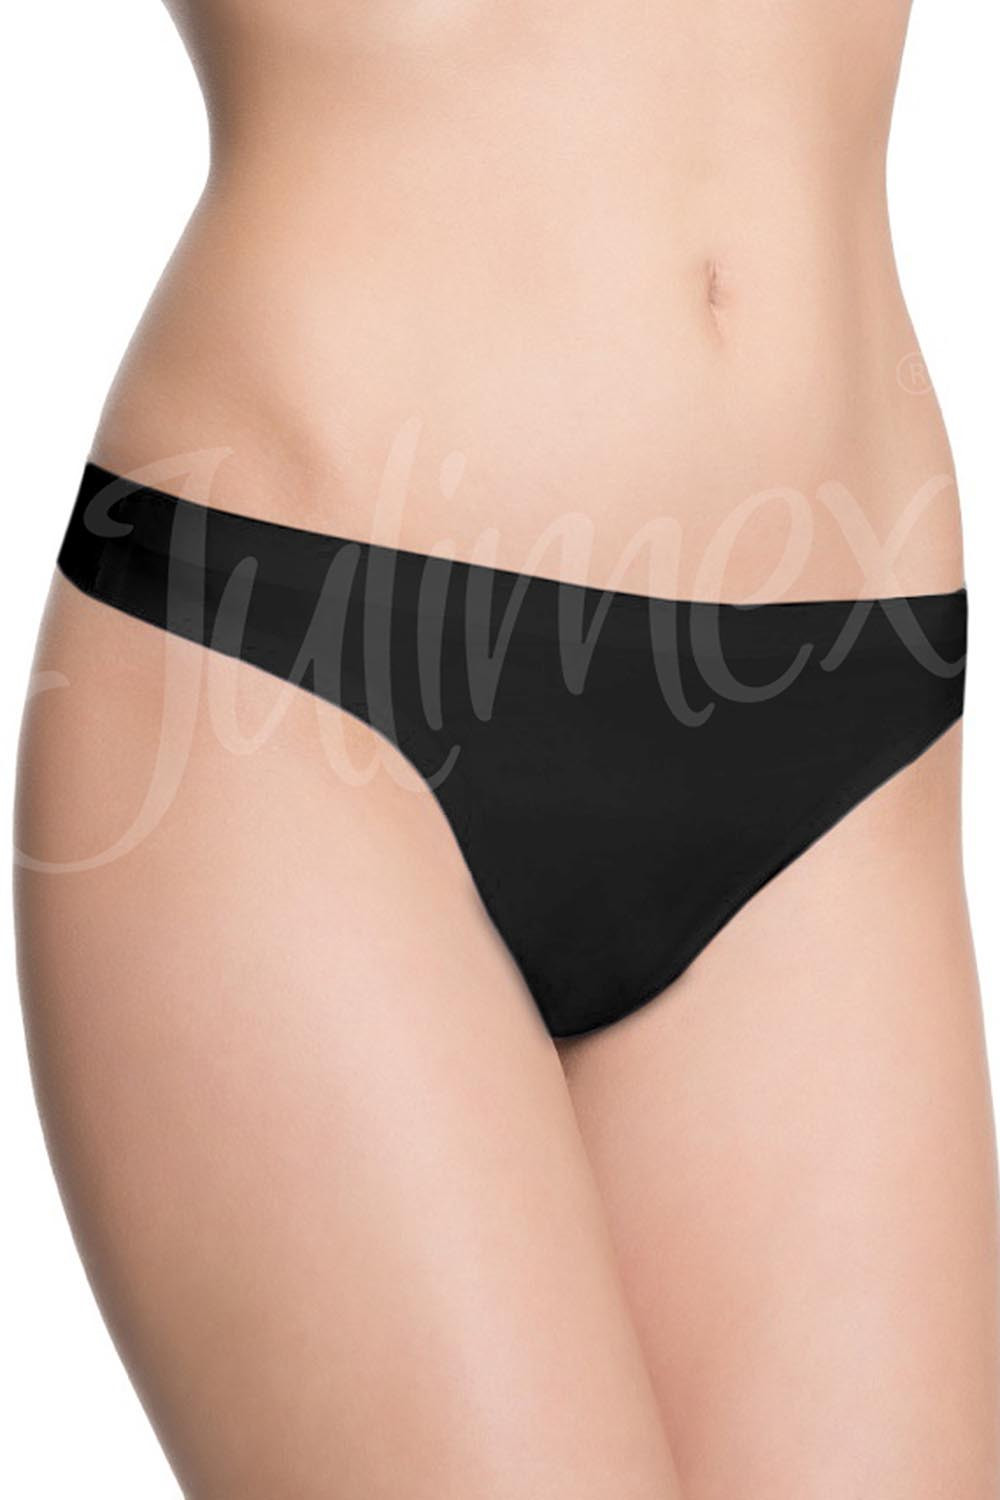 Julimex String panty kolor:czarny S